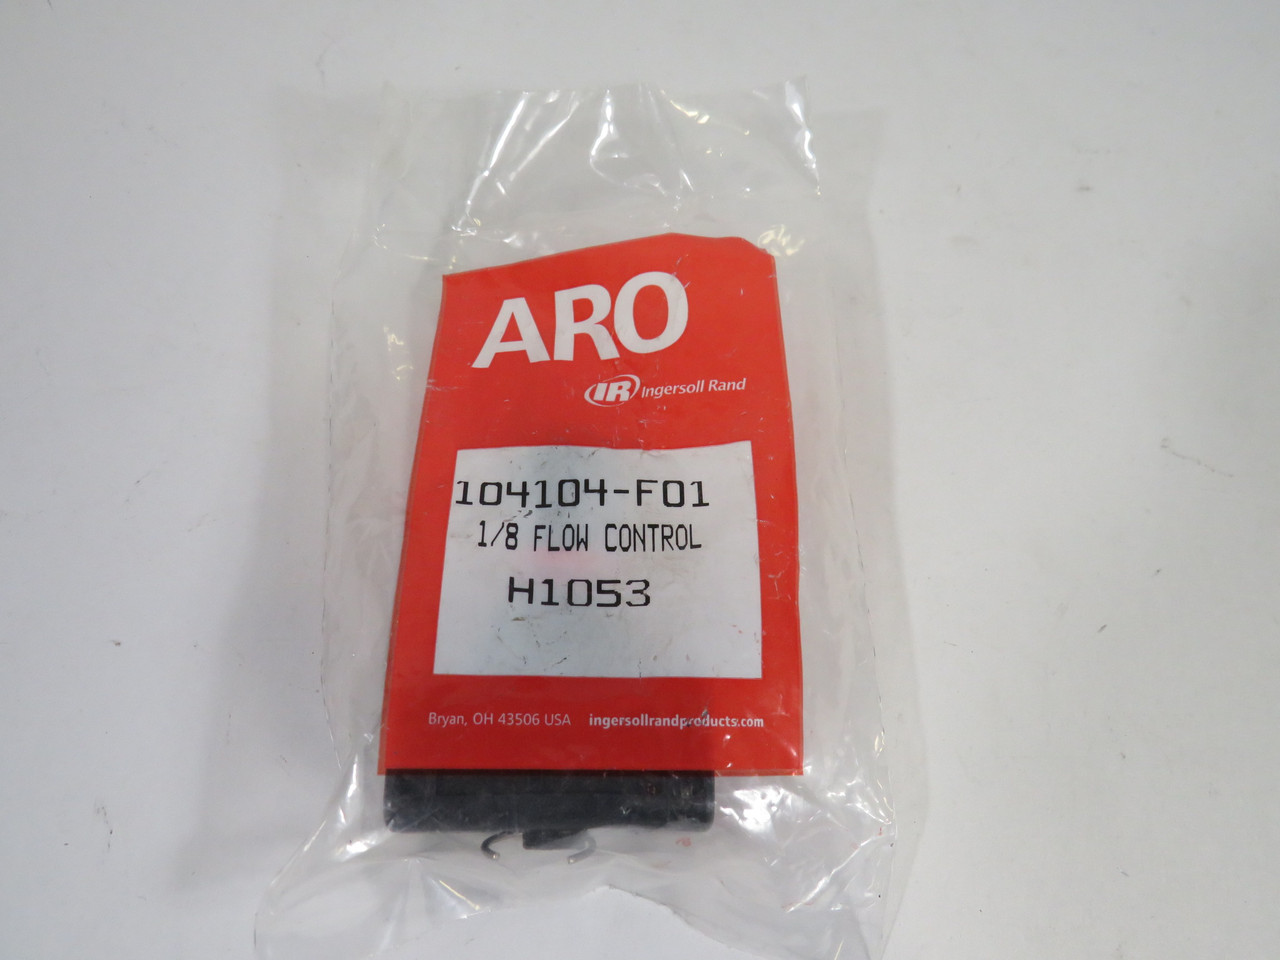 Aro 104104-F01 In-Line Flow Control Valve 1/8" NPT ! NEW !